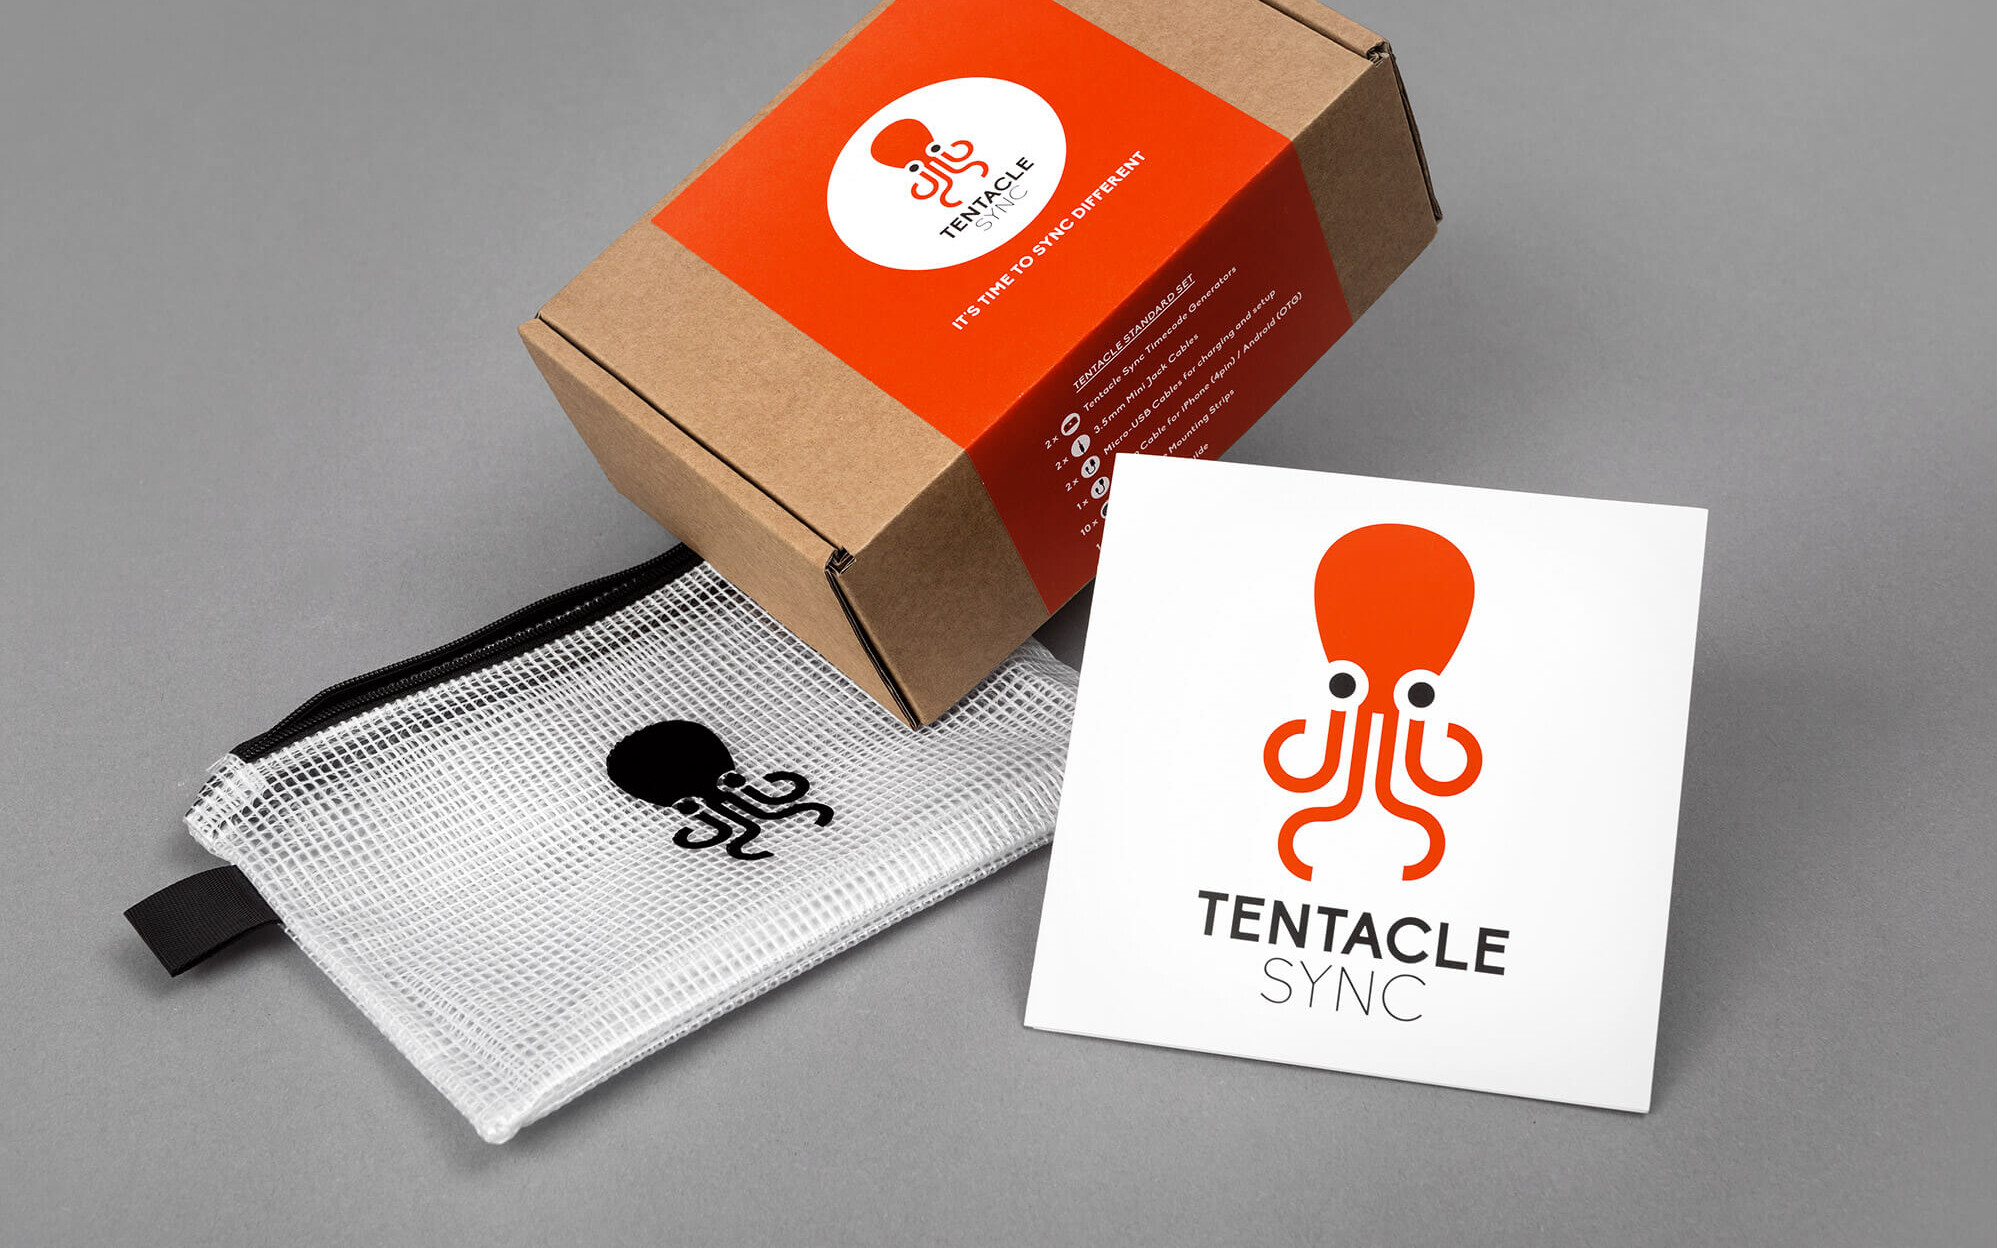 Aufnahme der Verpackung im Tentacle Sync Corporate Design: Karton mit Banderole, Aufbewahrungstasche und Datenträger mit Software